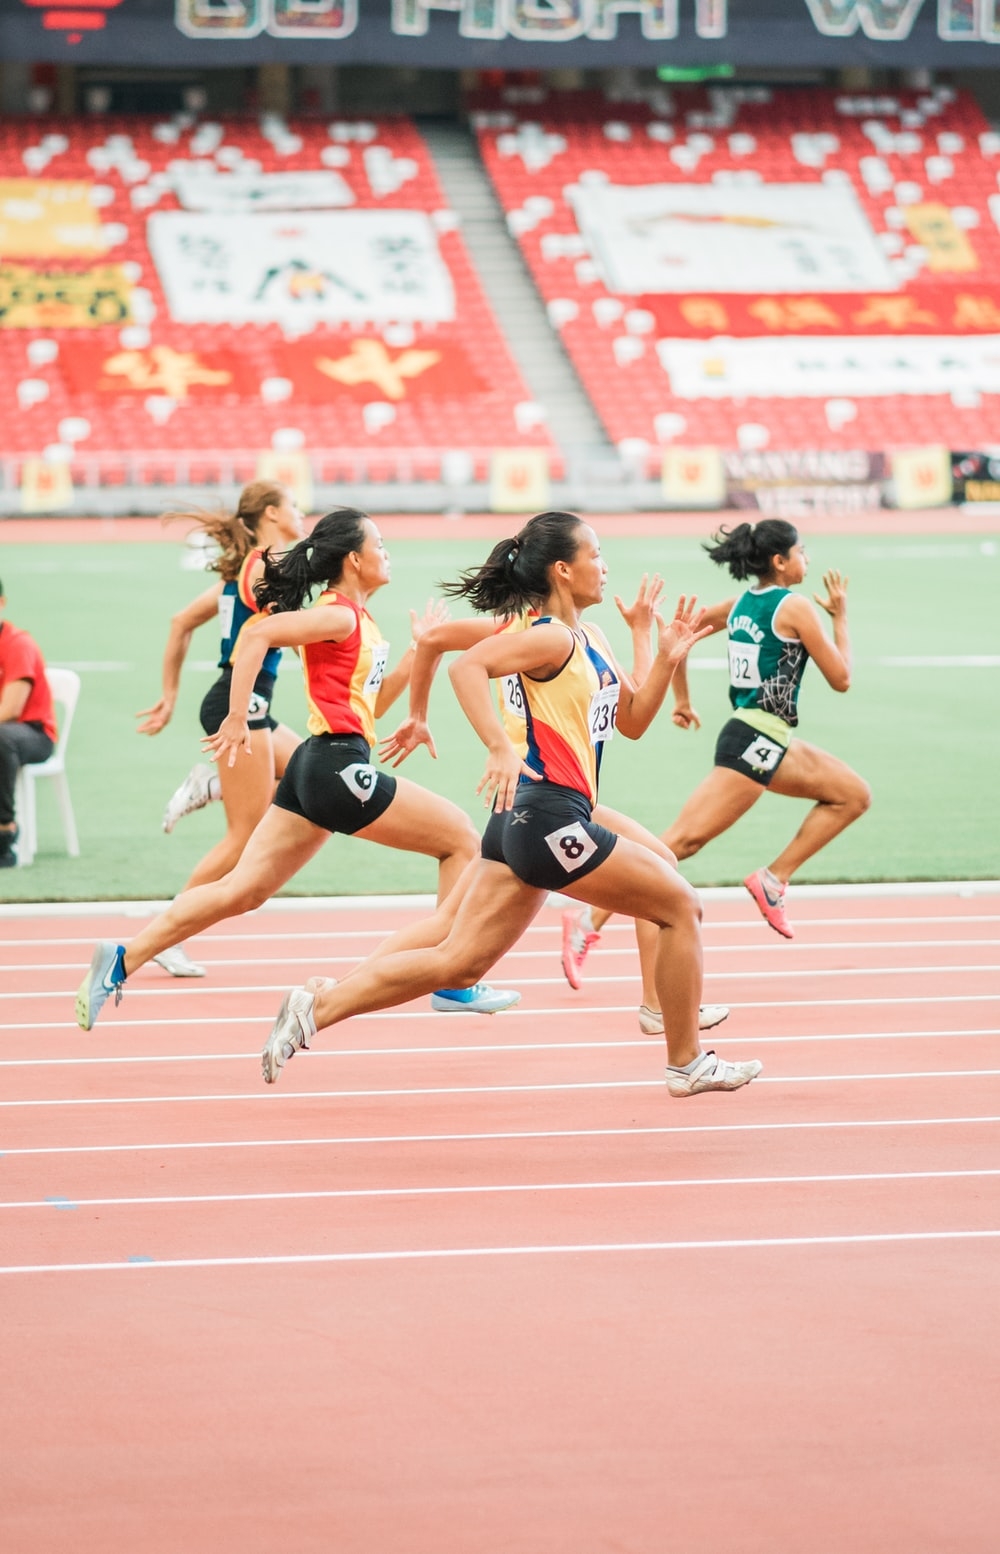 A group of women running